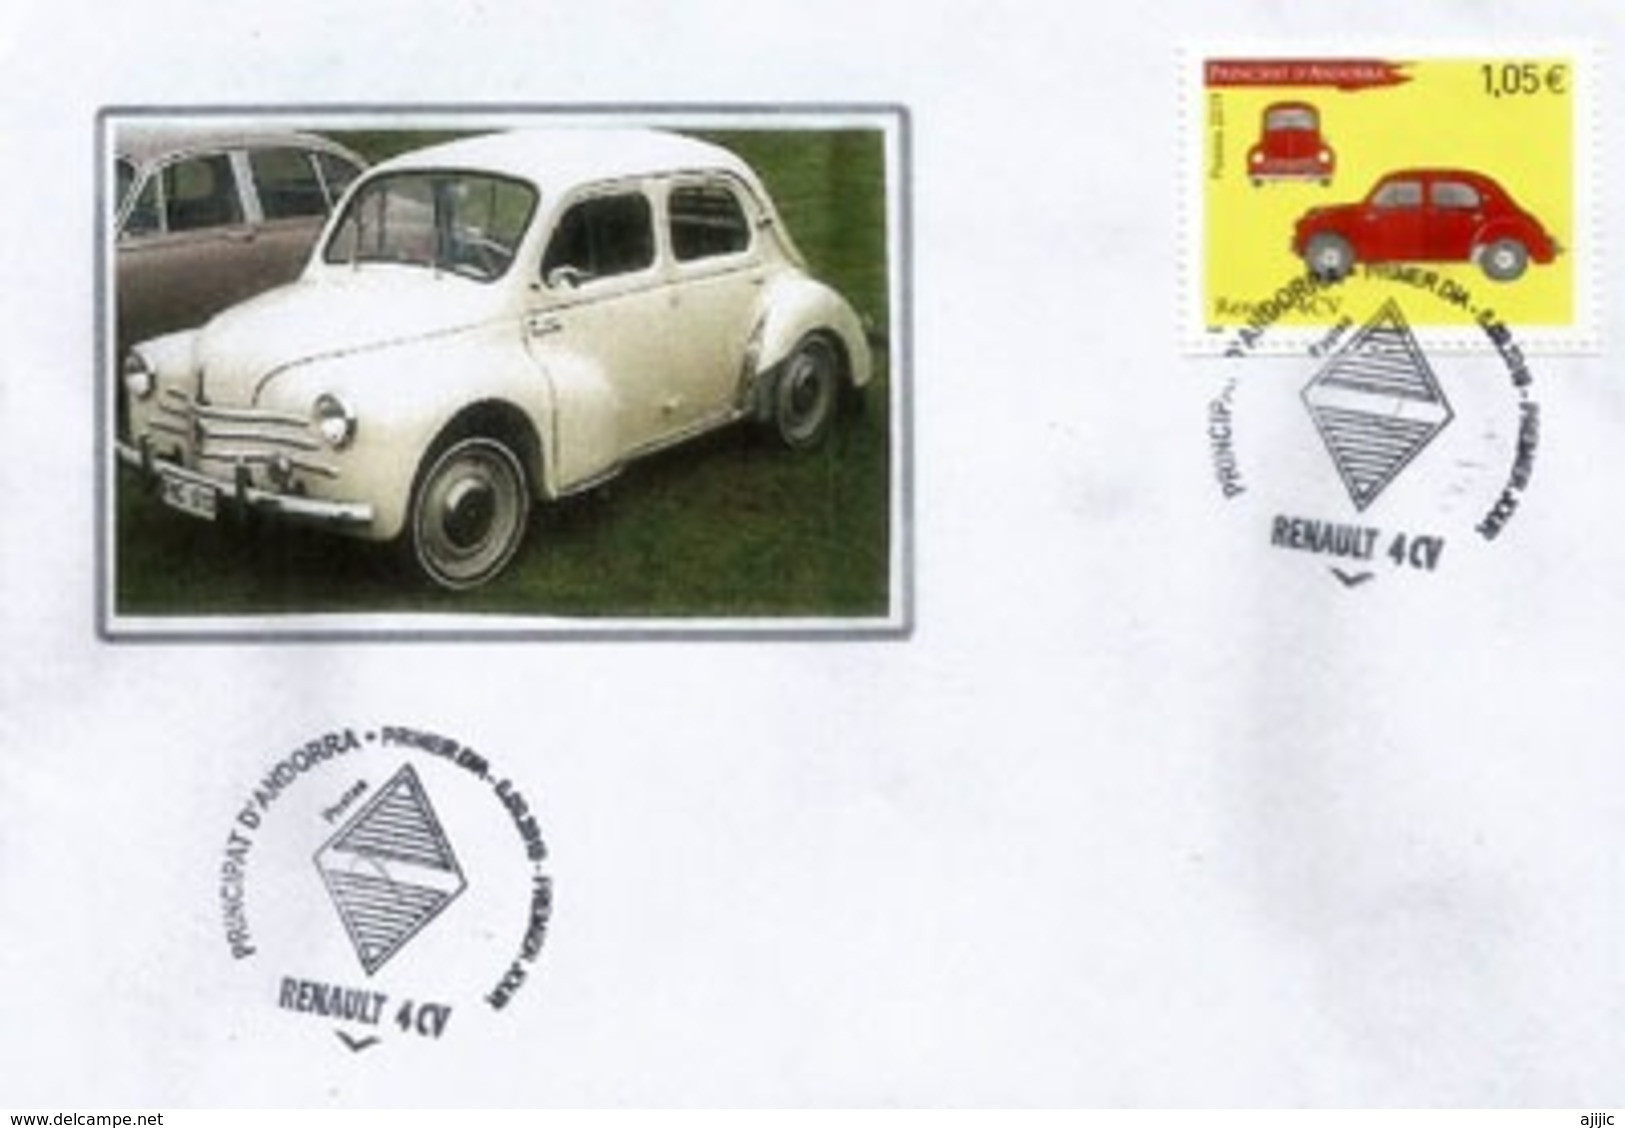 ANDORRA. Renault 4CV, Année 1947. émission Année 2019.  Oblitération Illustrée Losange Renault.  FDC - Storia Postale